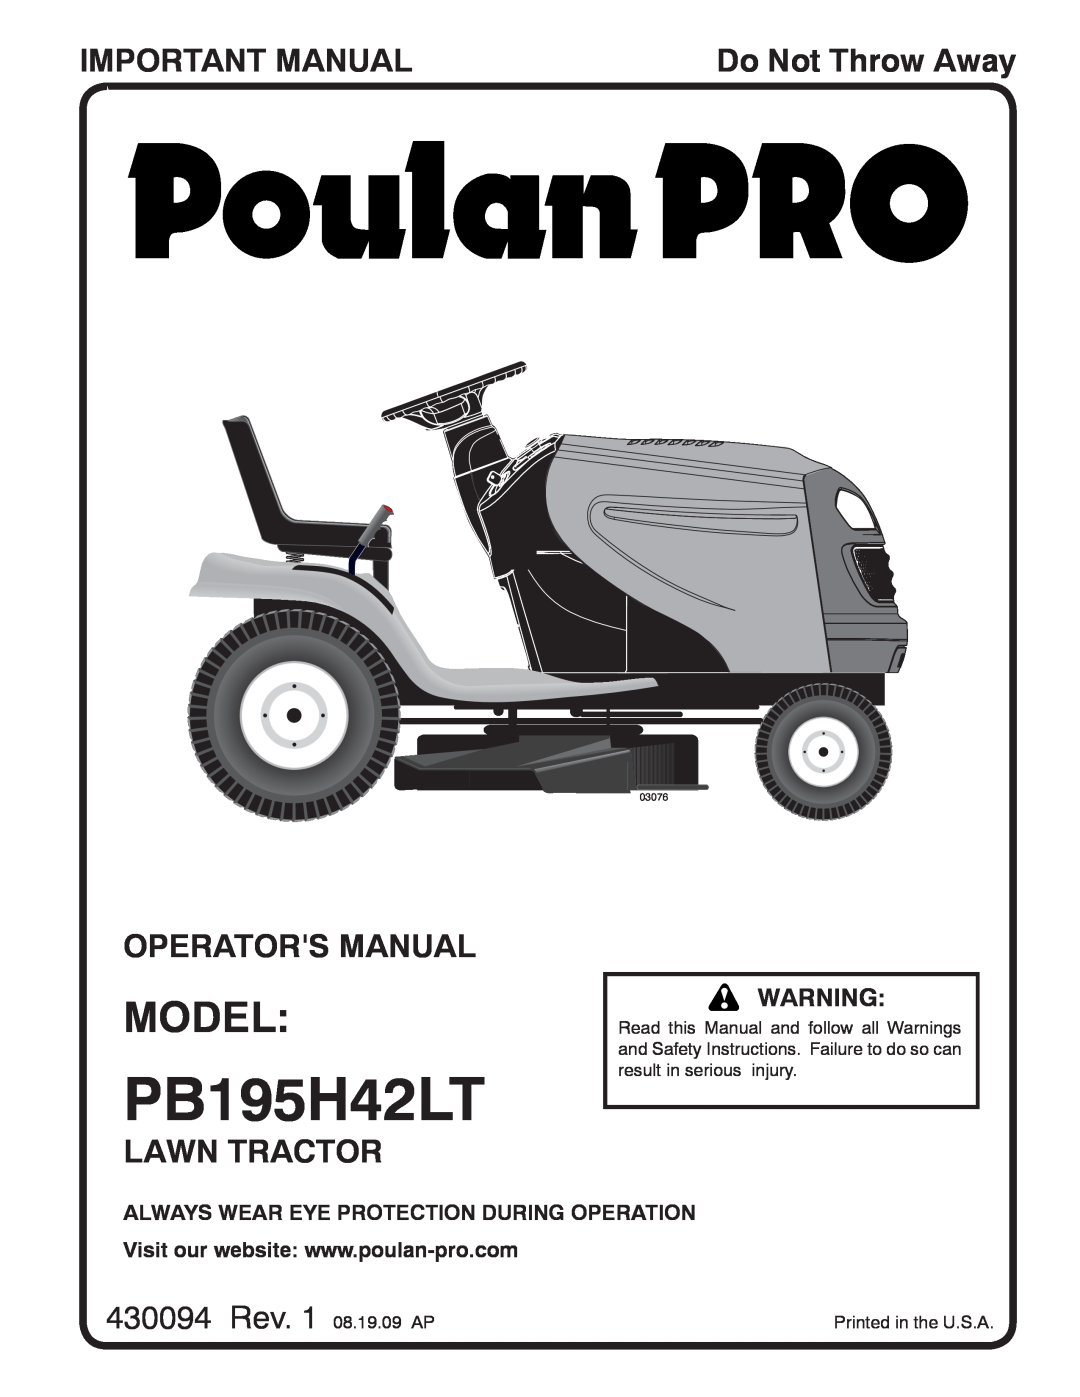 Poulan 96042010700 manual Model, Important Manual, Operators Manual, Lawn Tractor, 430094 Rev. 1 08.19.09 AP, PB195H42LT 